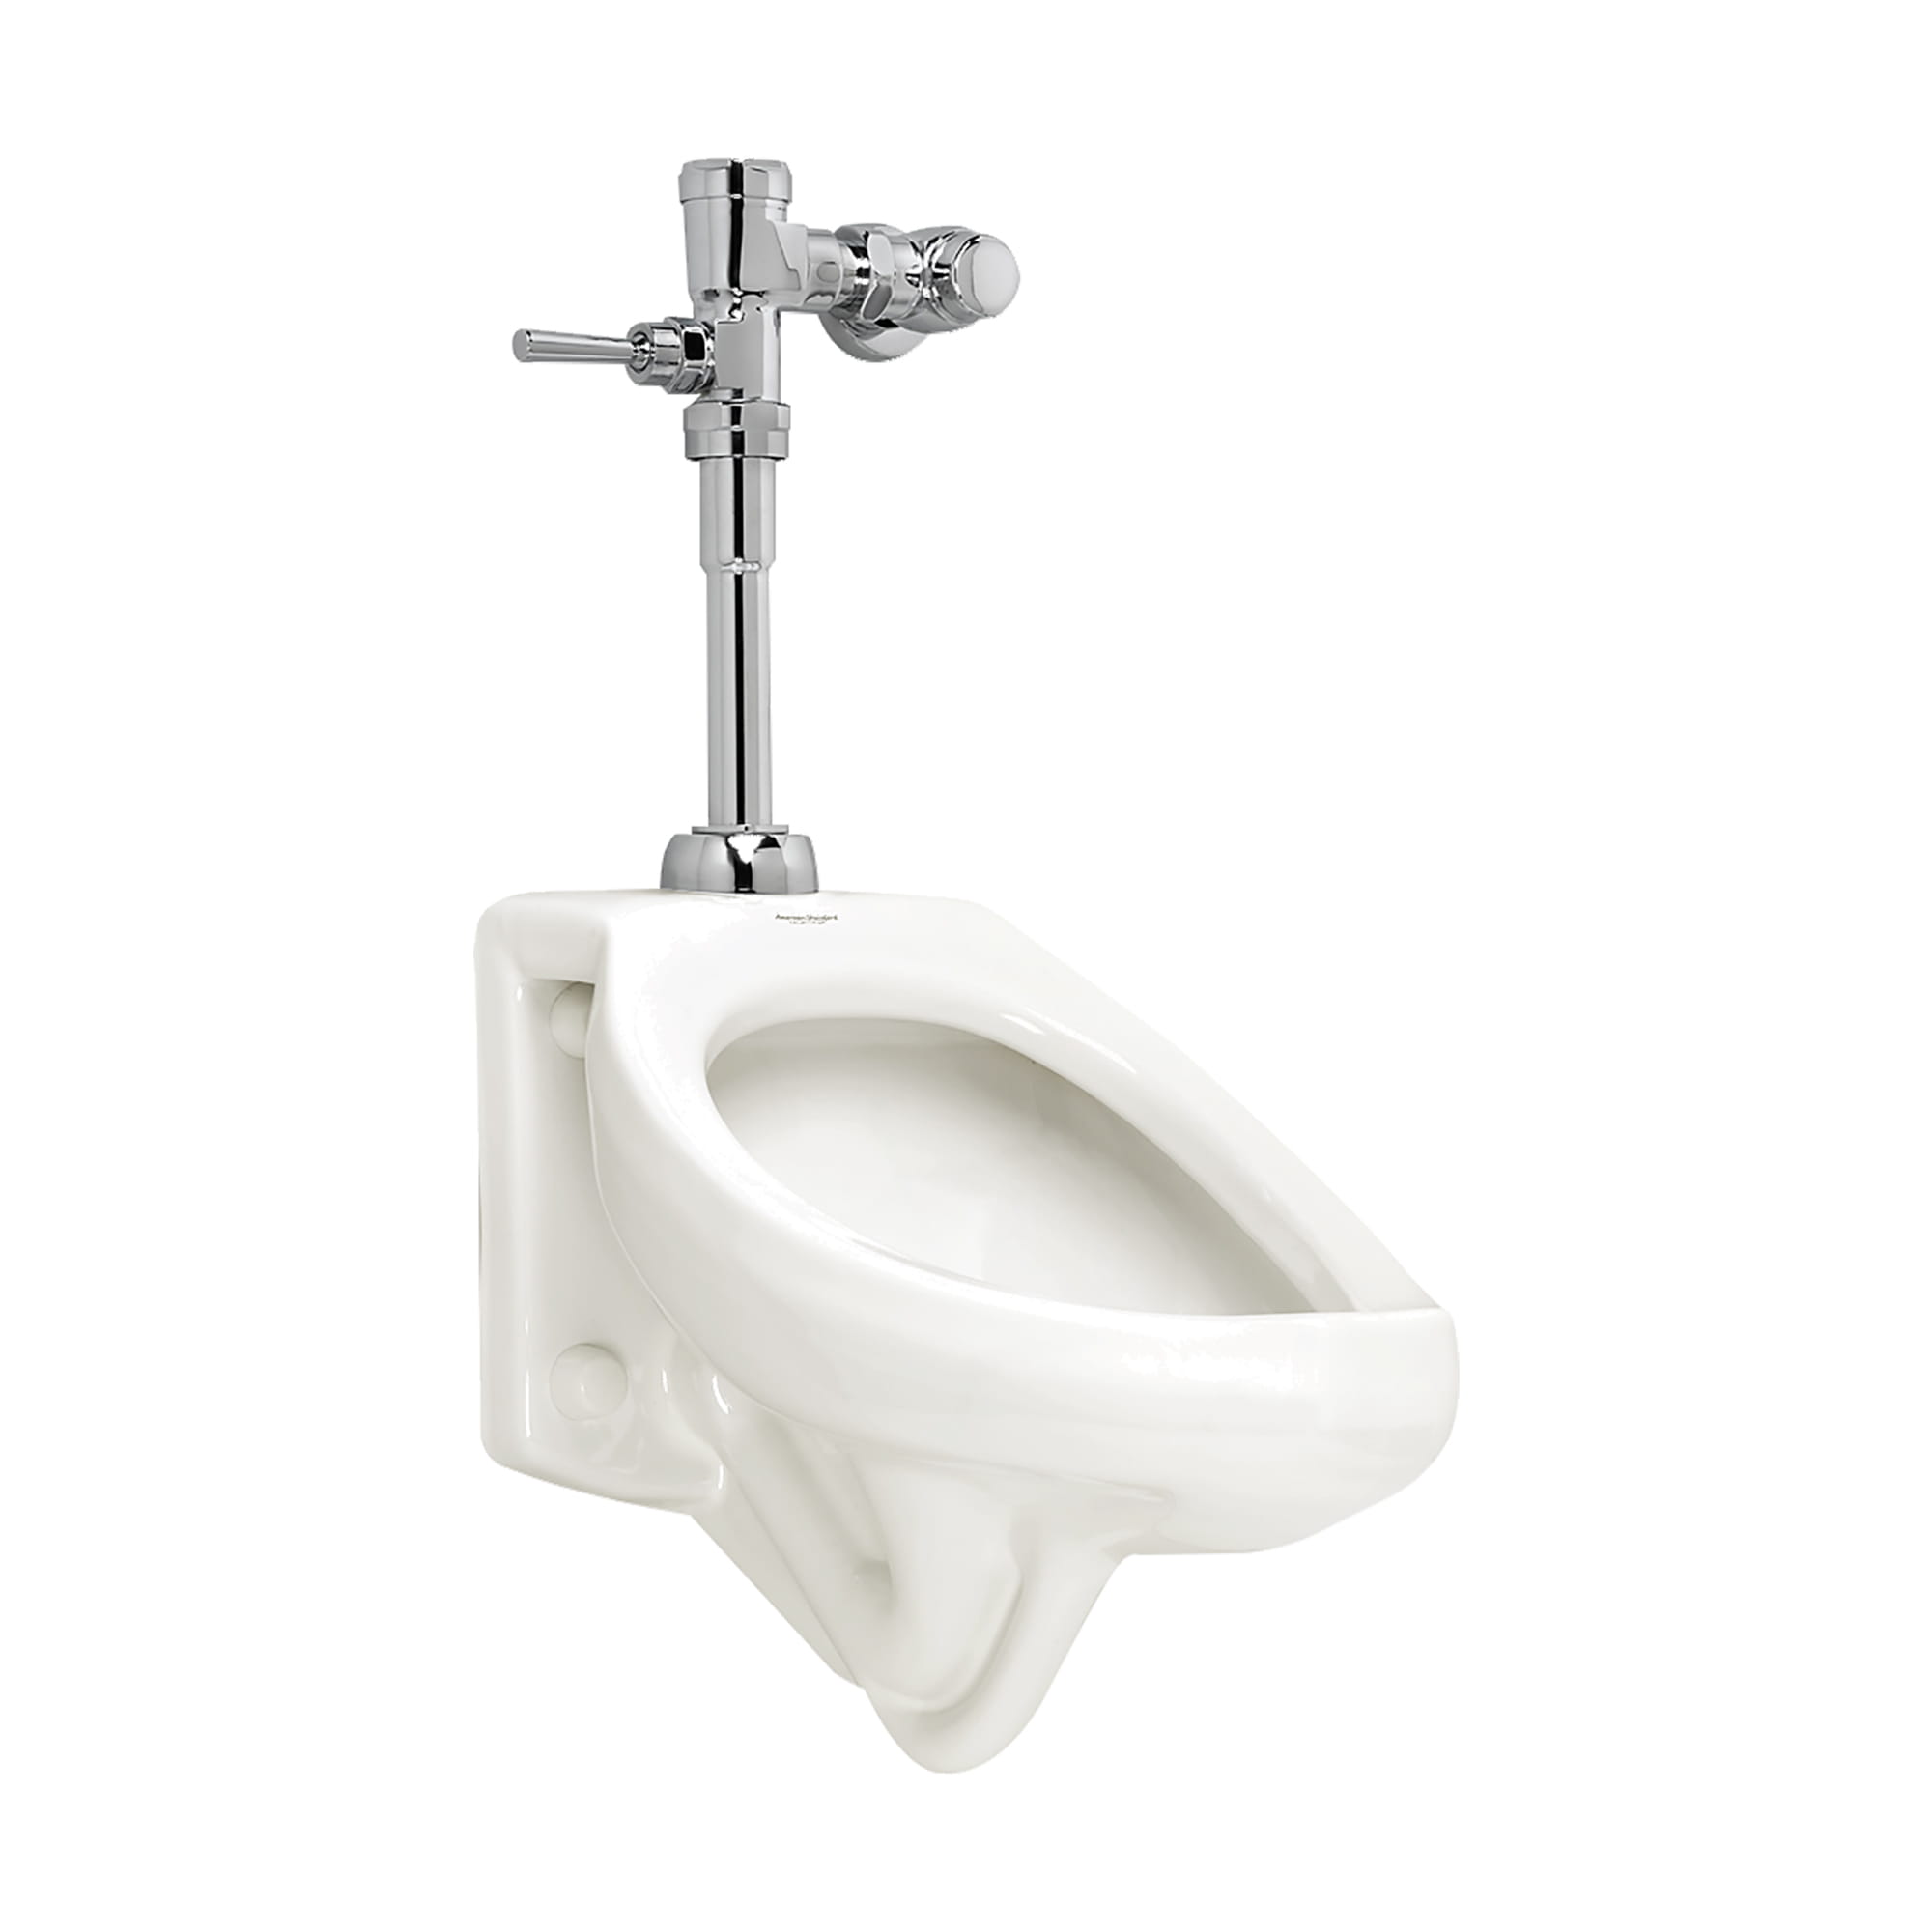 American Standard 6045SM101.002 Manual Flush Valves Urinal FV 1.0 Gpf Smo Chrome 